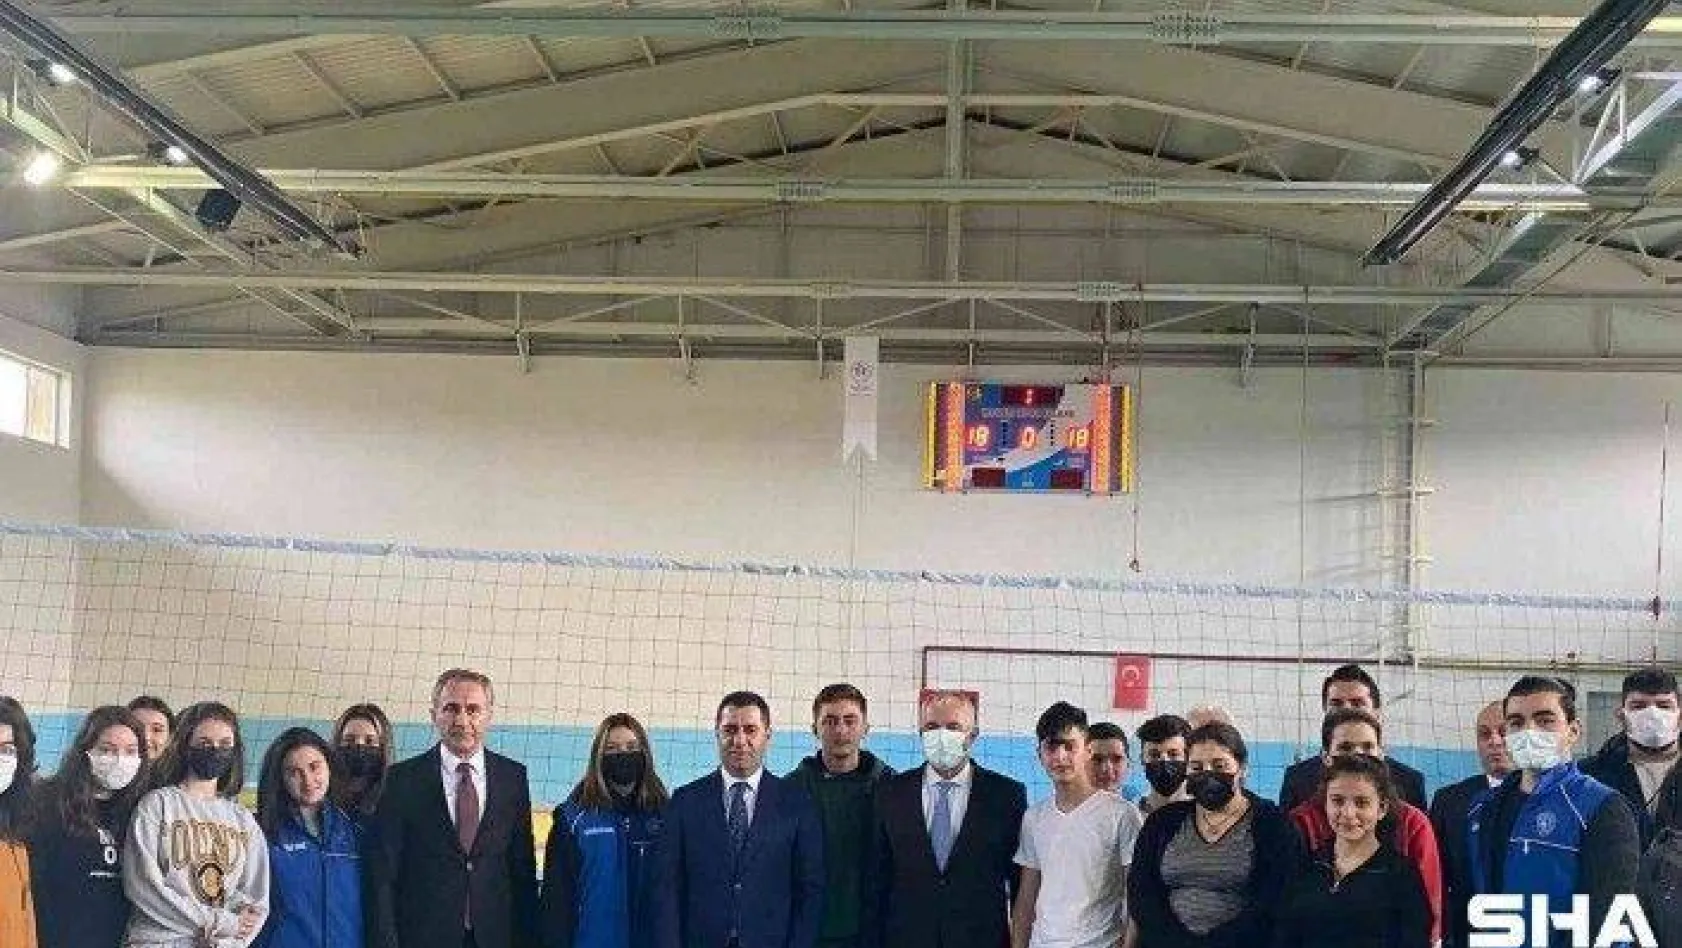 Spor Toto Teşkilat Başkanı Bozgeyik, Manyas'ta incelemelerde bulundu